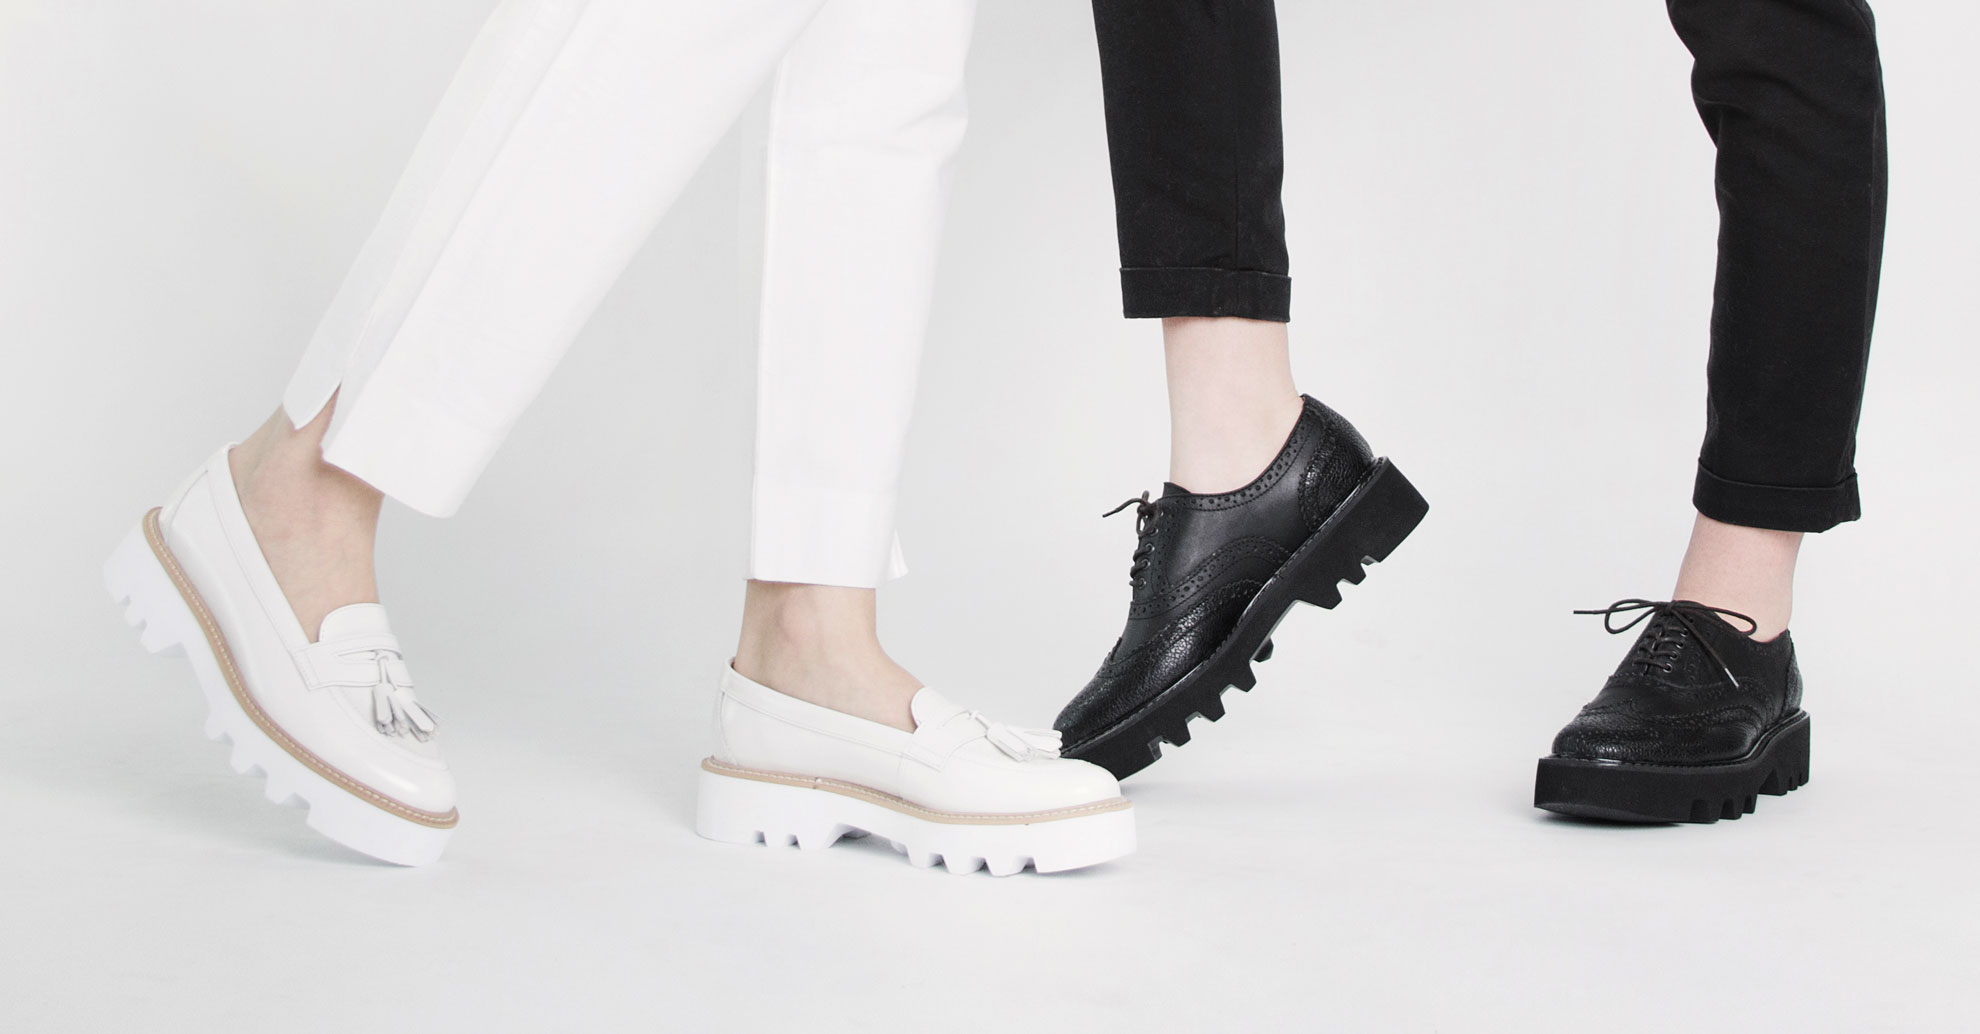 Circul представили новую коллекцию женской обуви-320x180